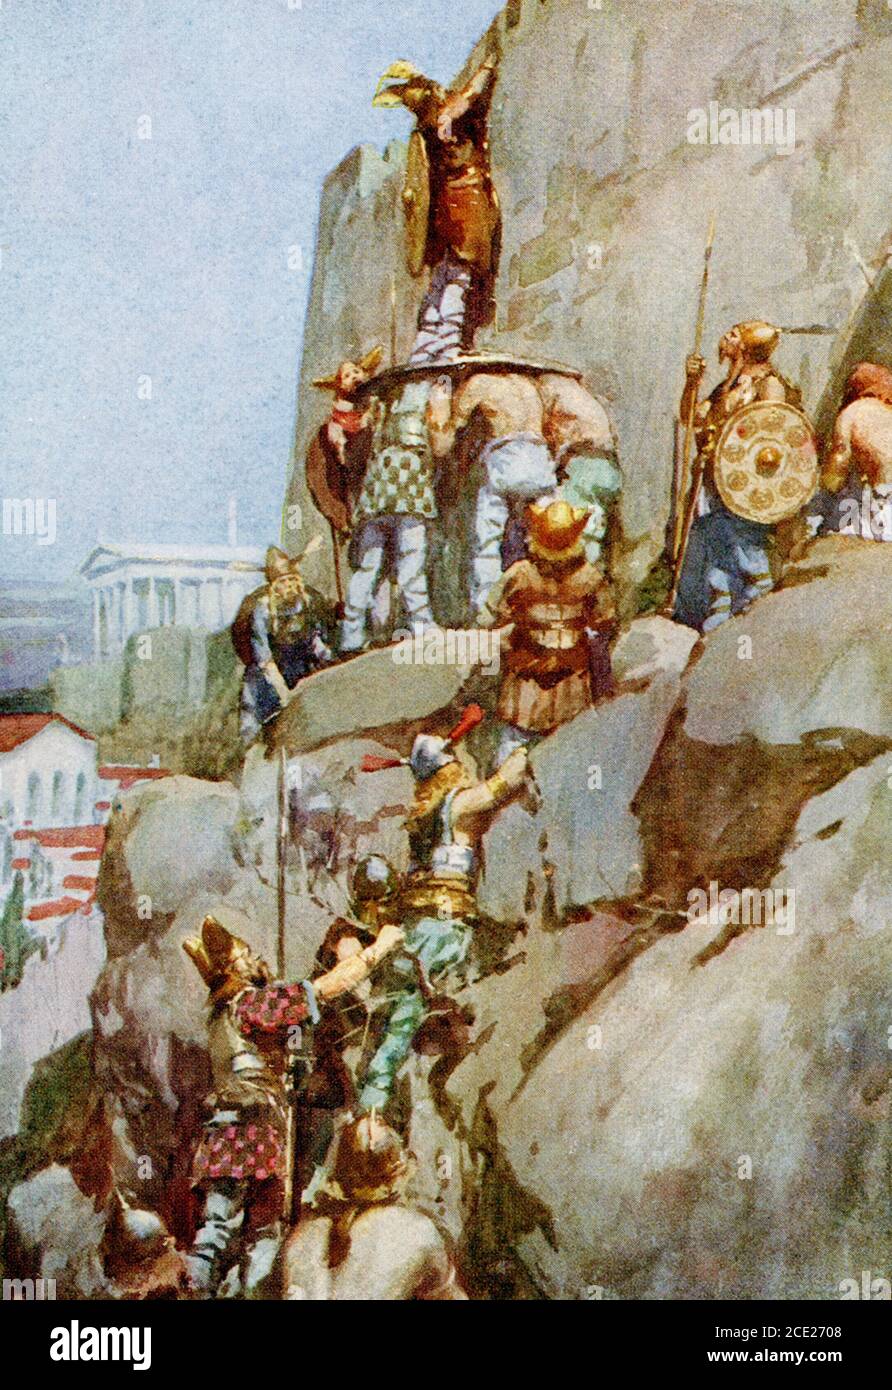 Un par un, les Gaulois se suivirent. Cette scène représente l'invasion gauloise de Rome en 390 av. J.-C. Retour à Rome, selon la tradition, les Gaulois ont tenté d'infiltrer le Capitole en montant la colline près du Temple de Carmins, une déesse de naissance. Les Gaulois ont gagné le sommet, ont échappé aux gardes romains et n'ont même pas réveillé les chiens. Ils ne pouvaient pas se moquer du temple de Juno, cependant, comme le rocking de ses oies sacrées a finalement alerté les gardes. Sous la direction de Marcus Manilus, les gardes romains affrontaient les Gaulois. Banque D'Images